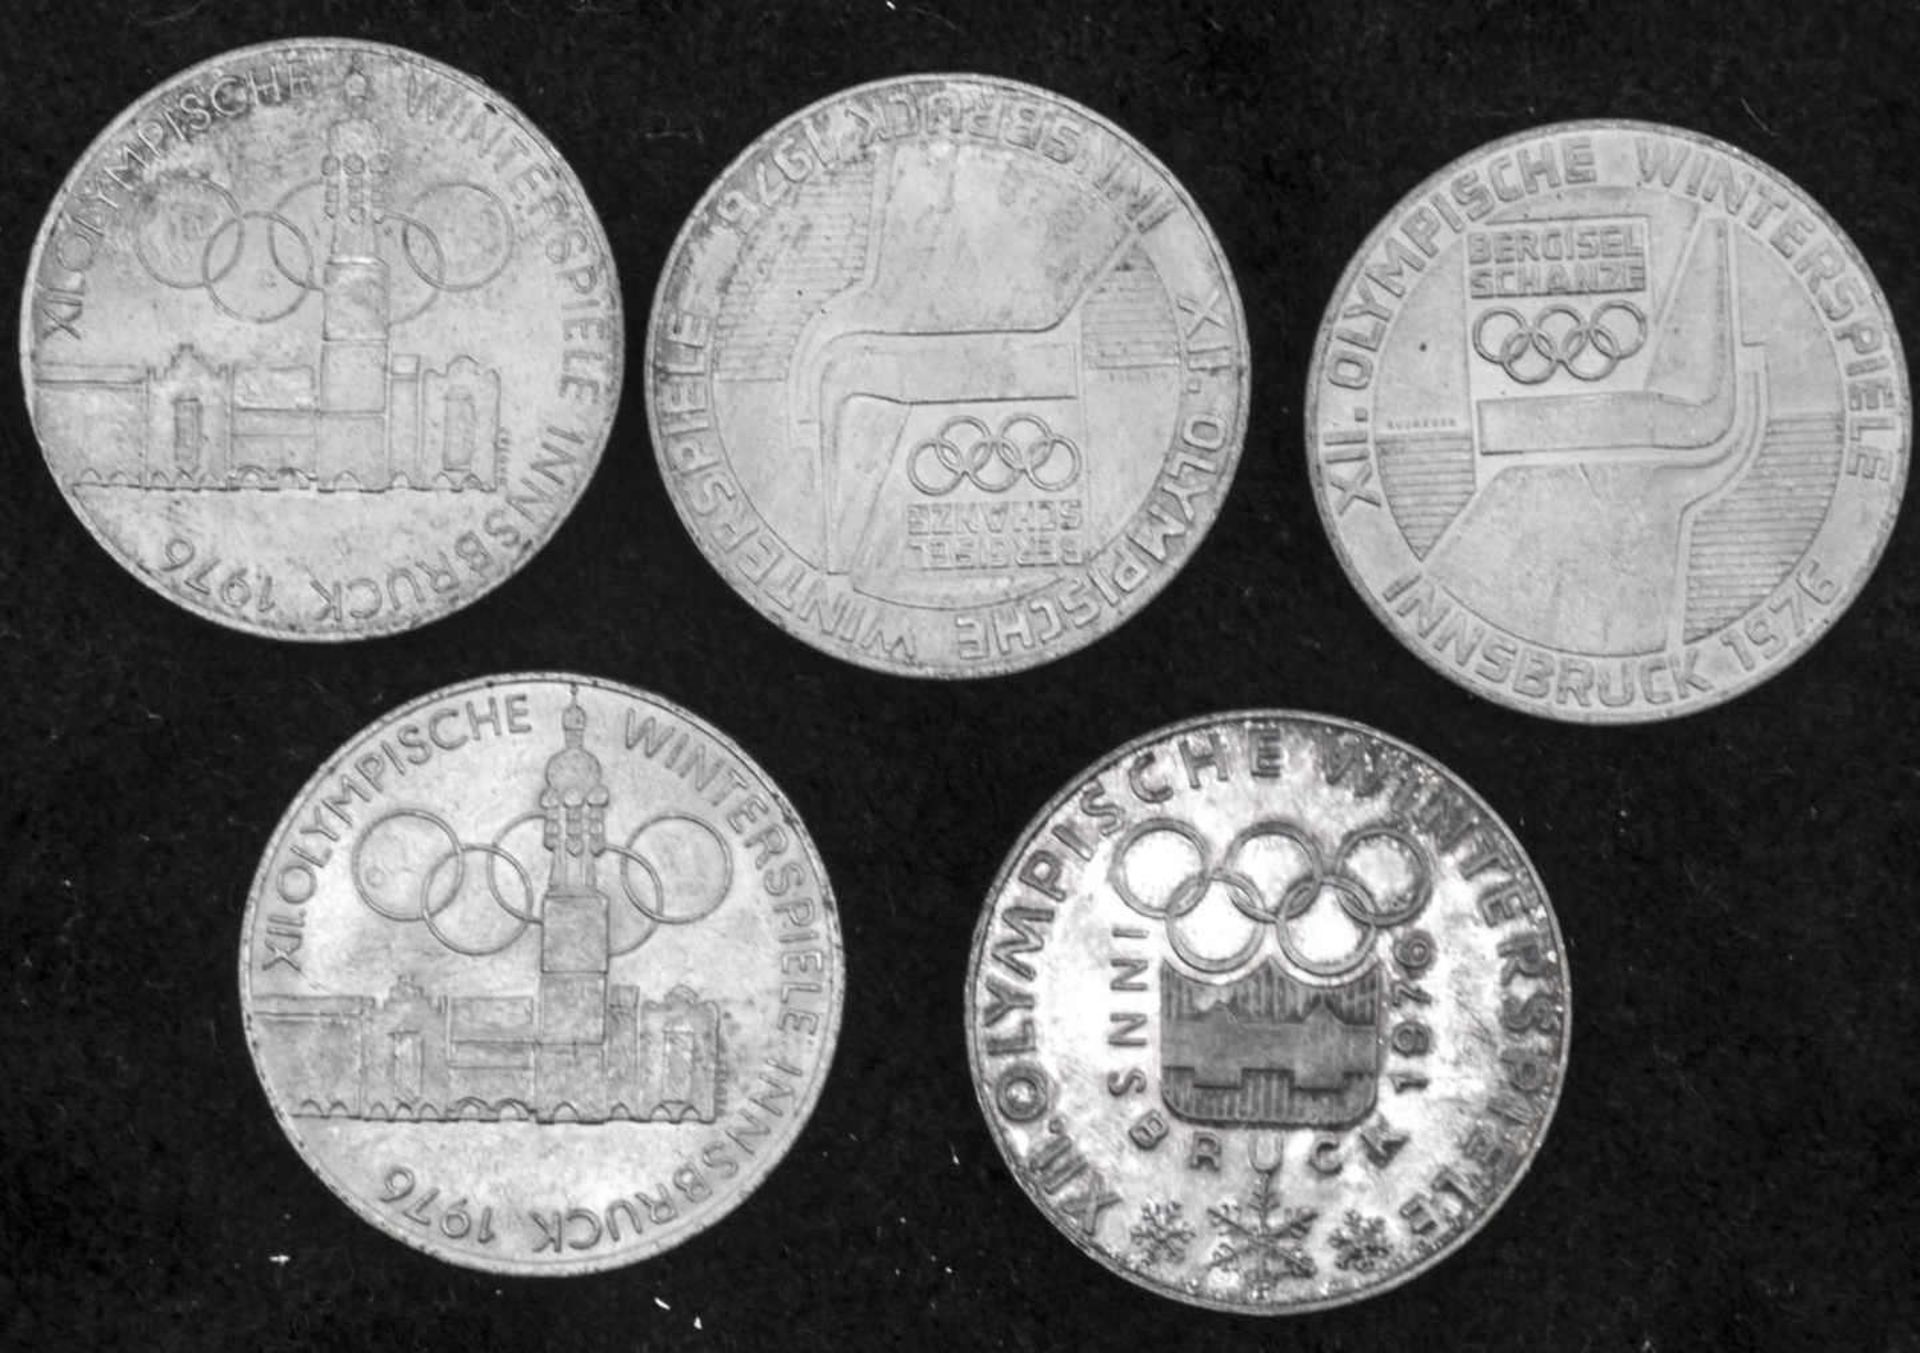 Österreich 1976, 5 x 100.- Schilling - Silbermünzen. Austria 1976, 5 x 100 Schilling silver coins.